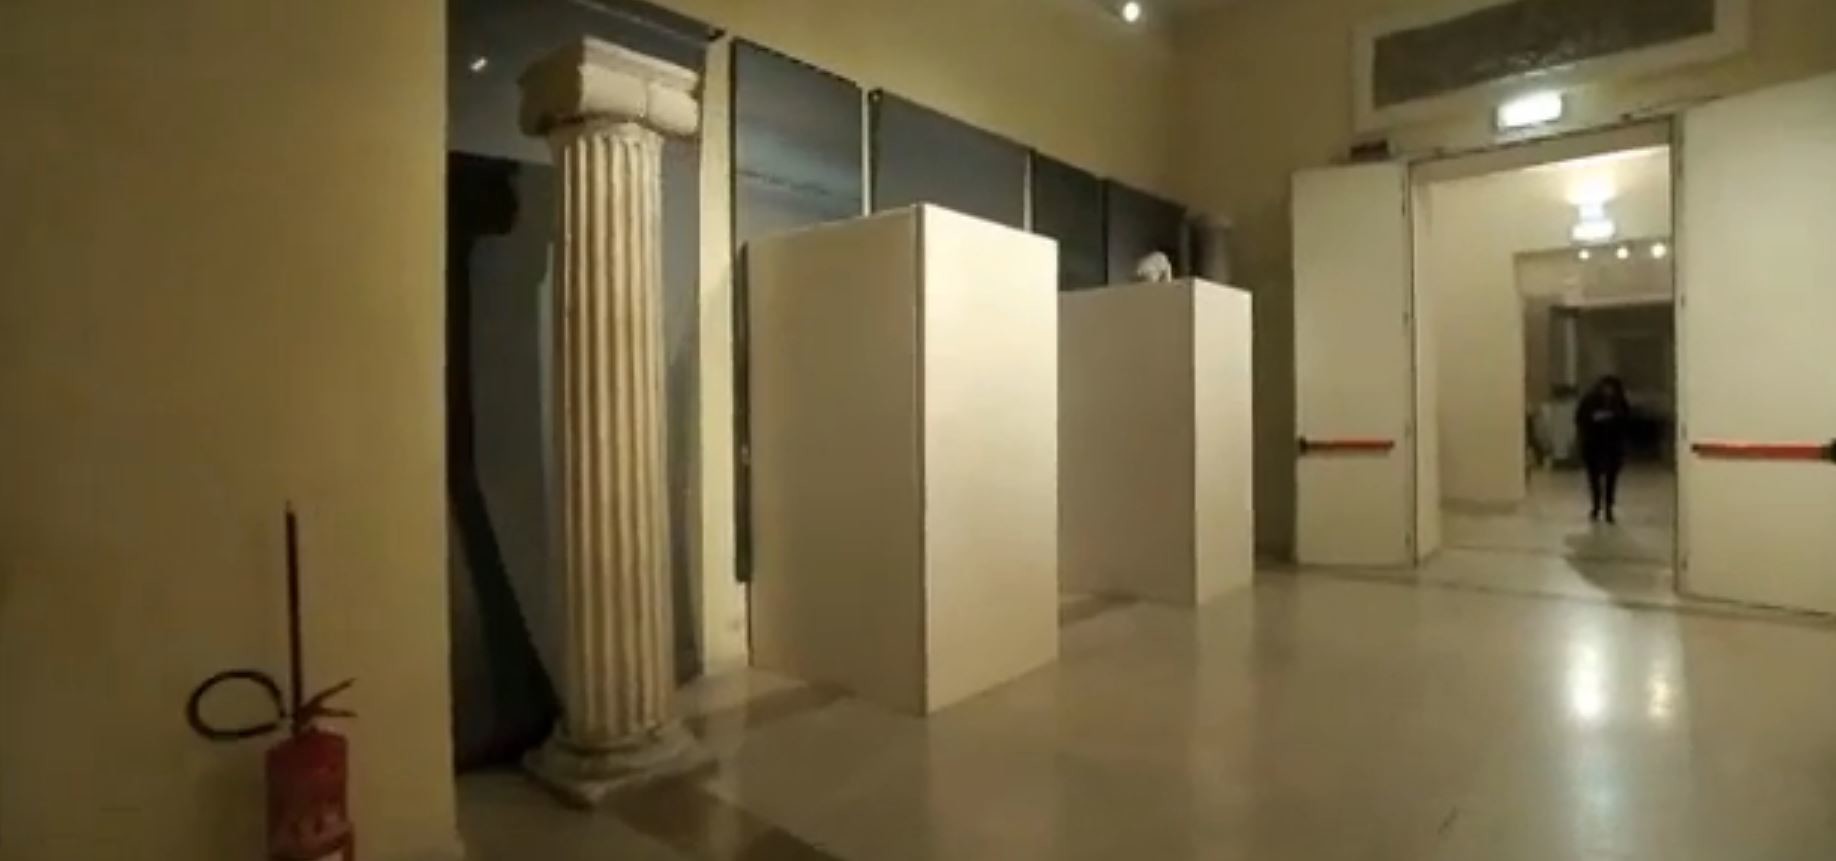 Quand Rohani est au musée de Rome, les statues de nus sont bien cachées